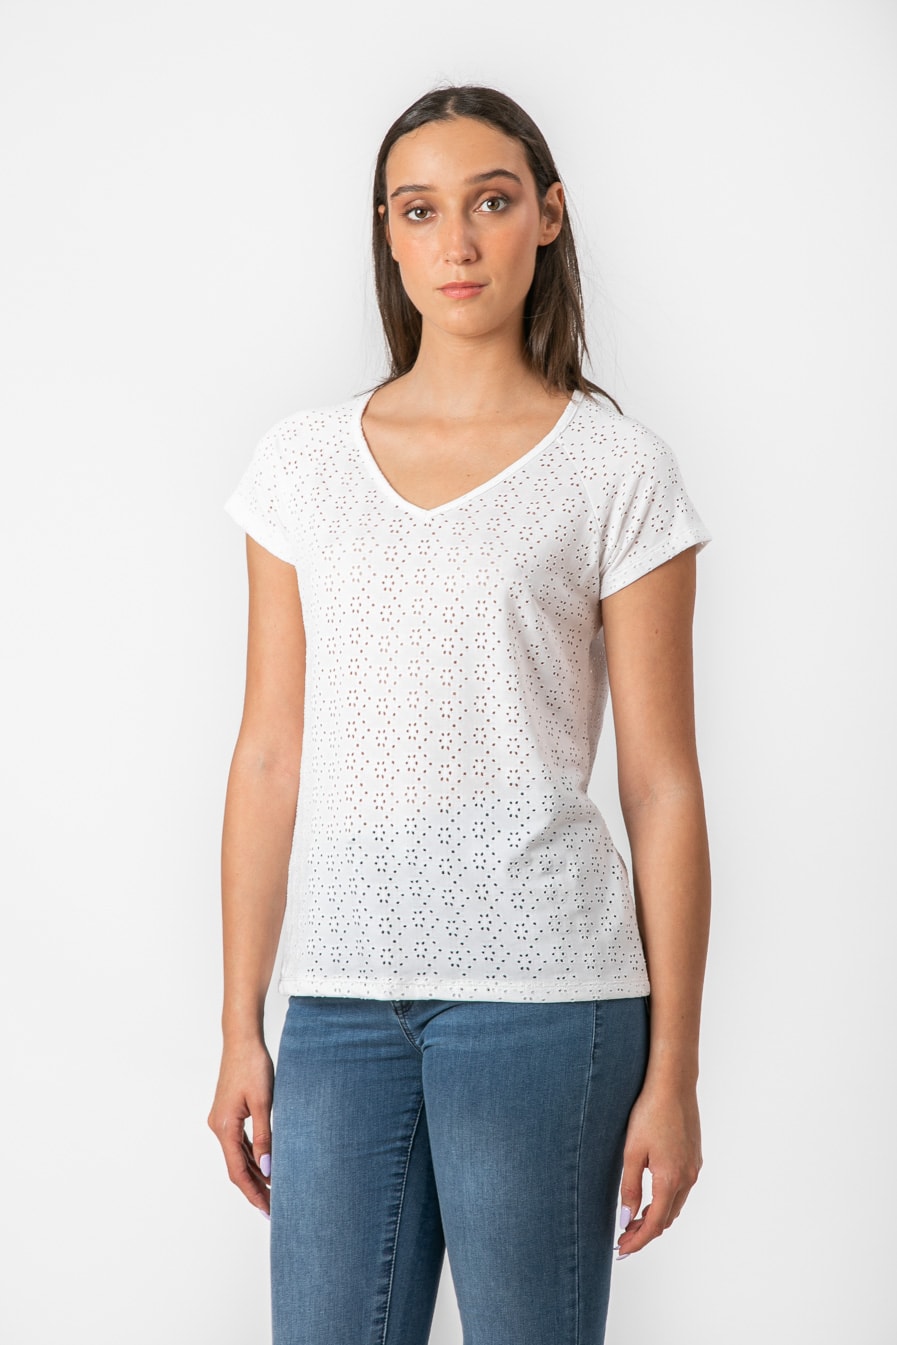 חולצה תחרה קצרה מעוצבת בצבע לבן